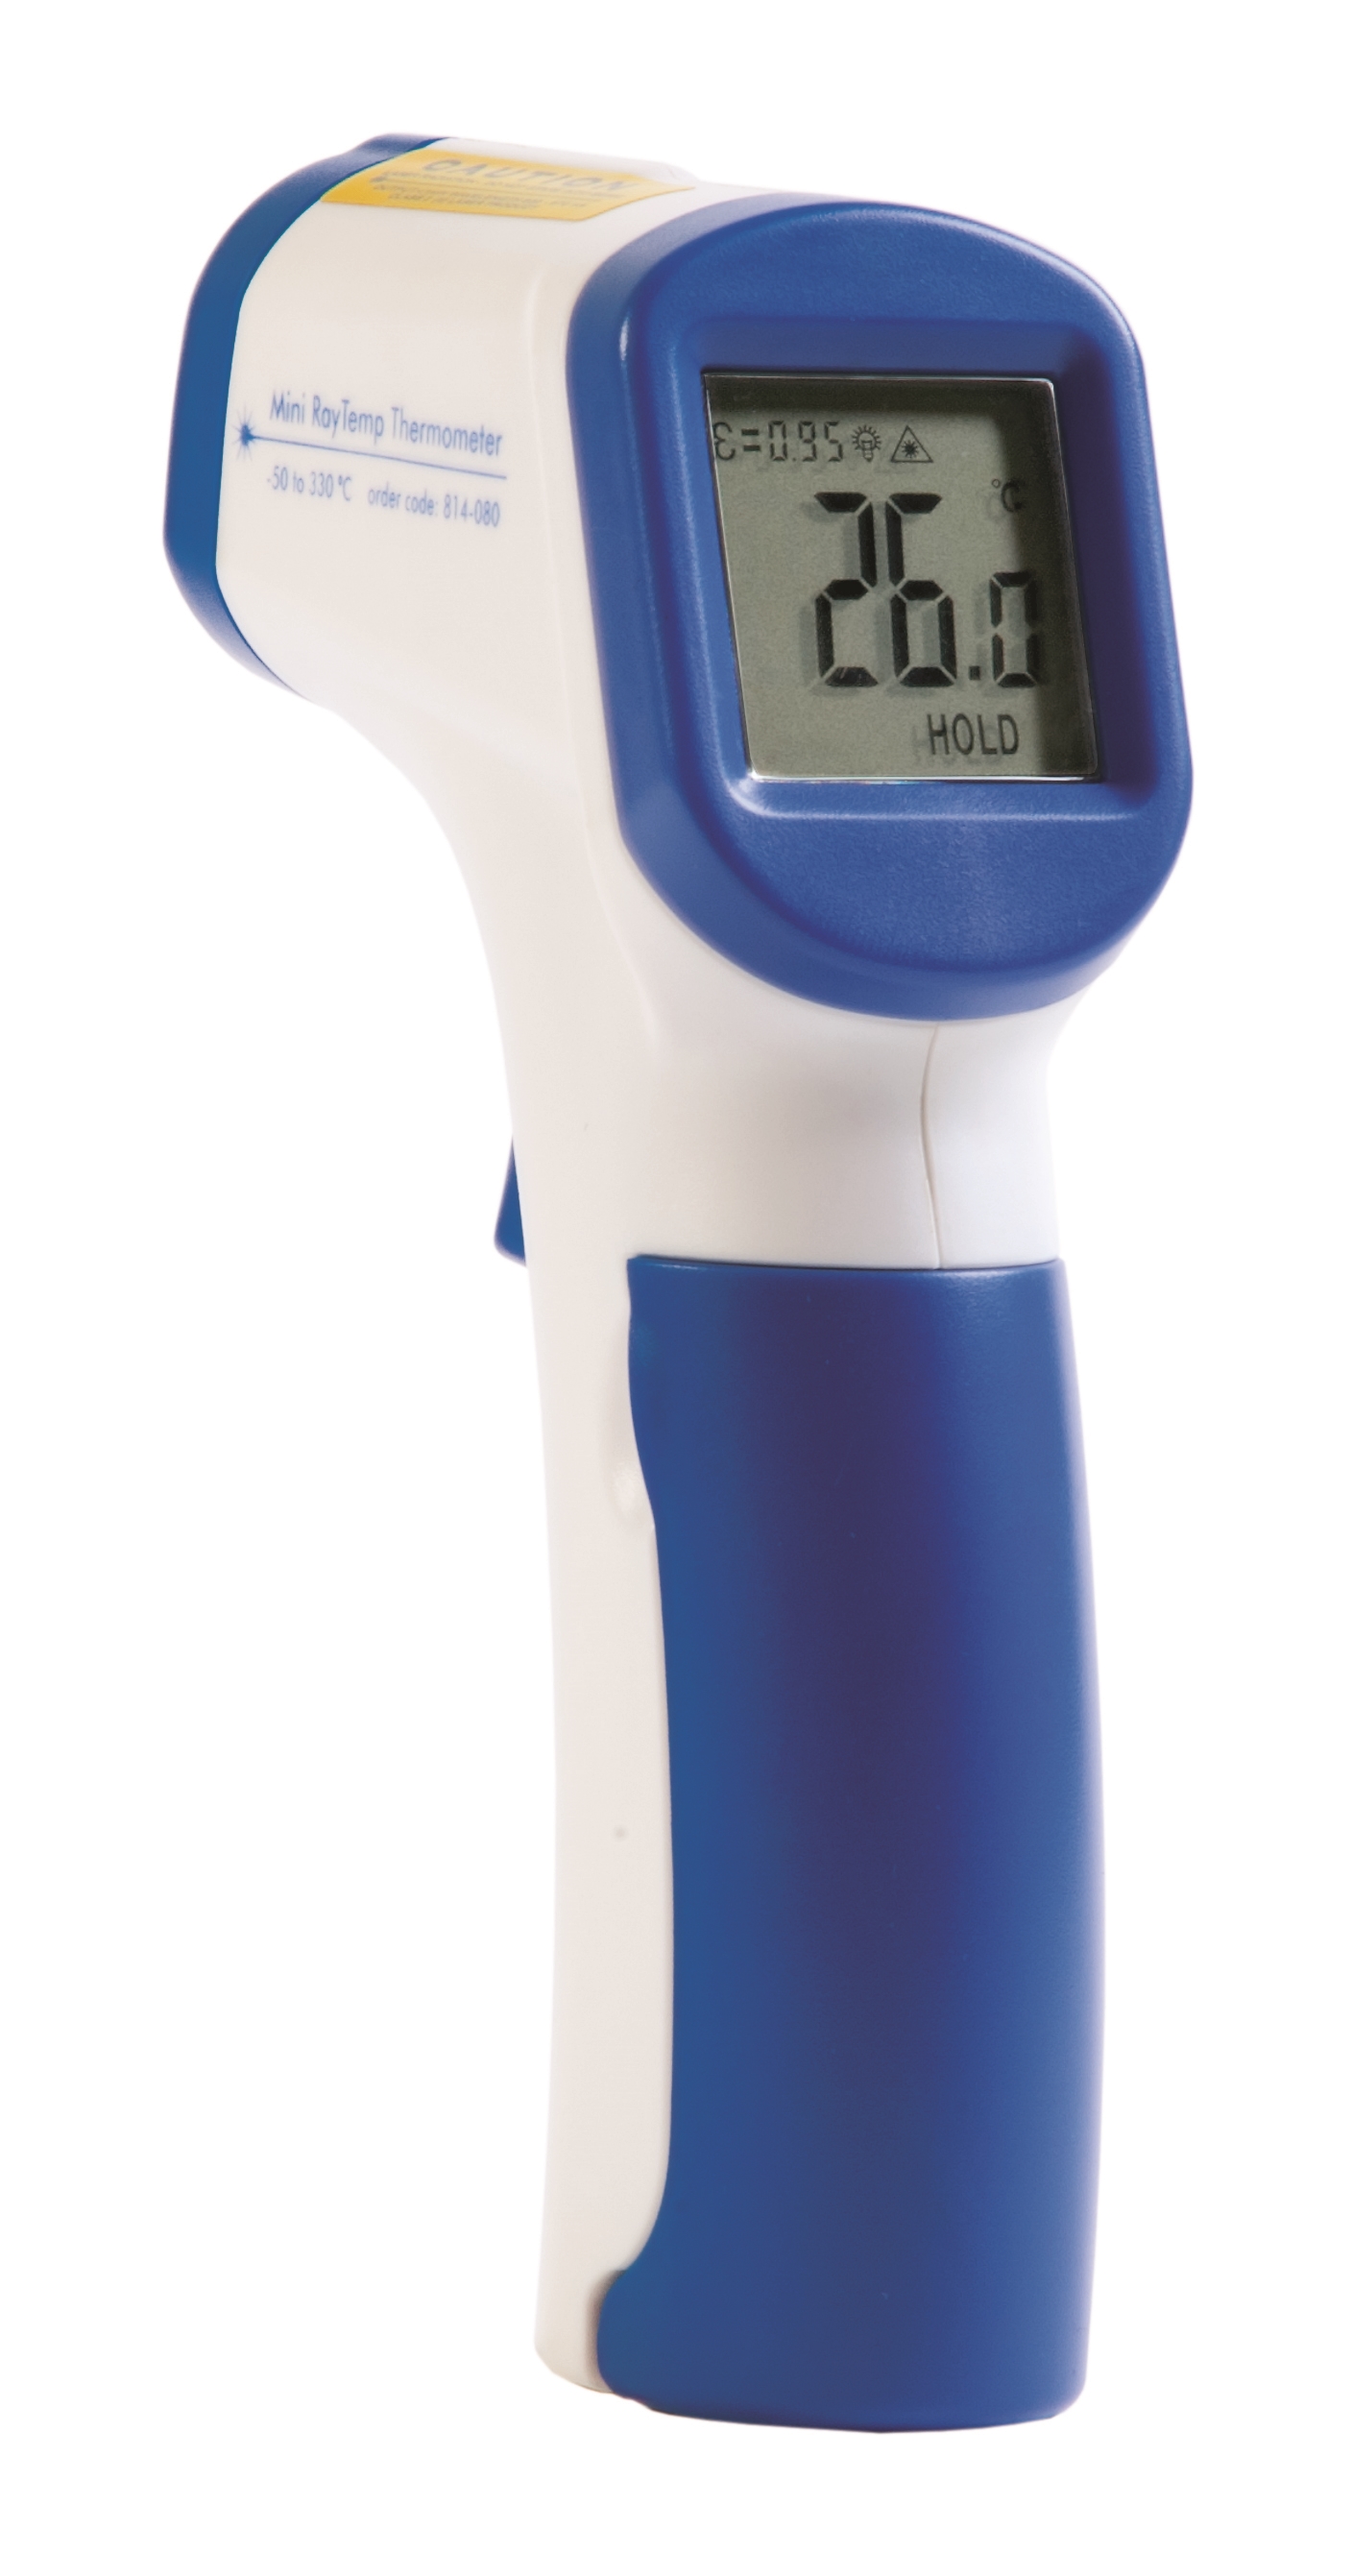 Afbeelding van Mini RayTemp infrarood thermometer 